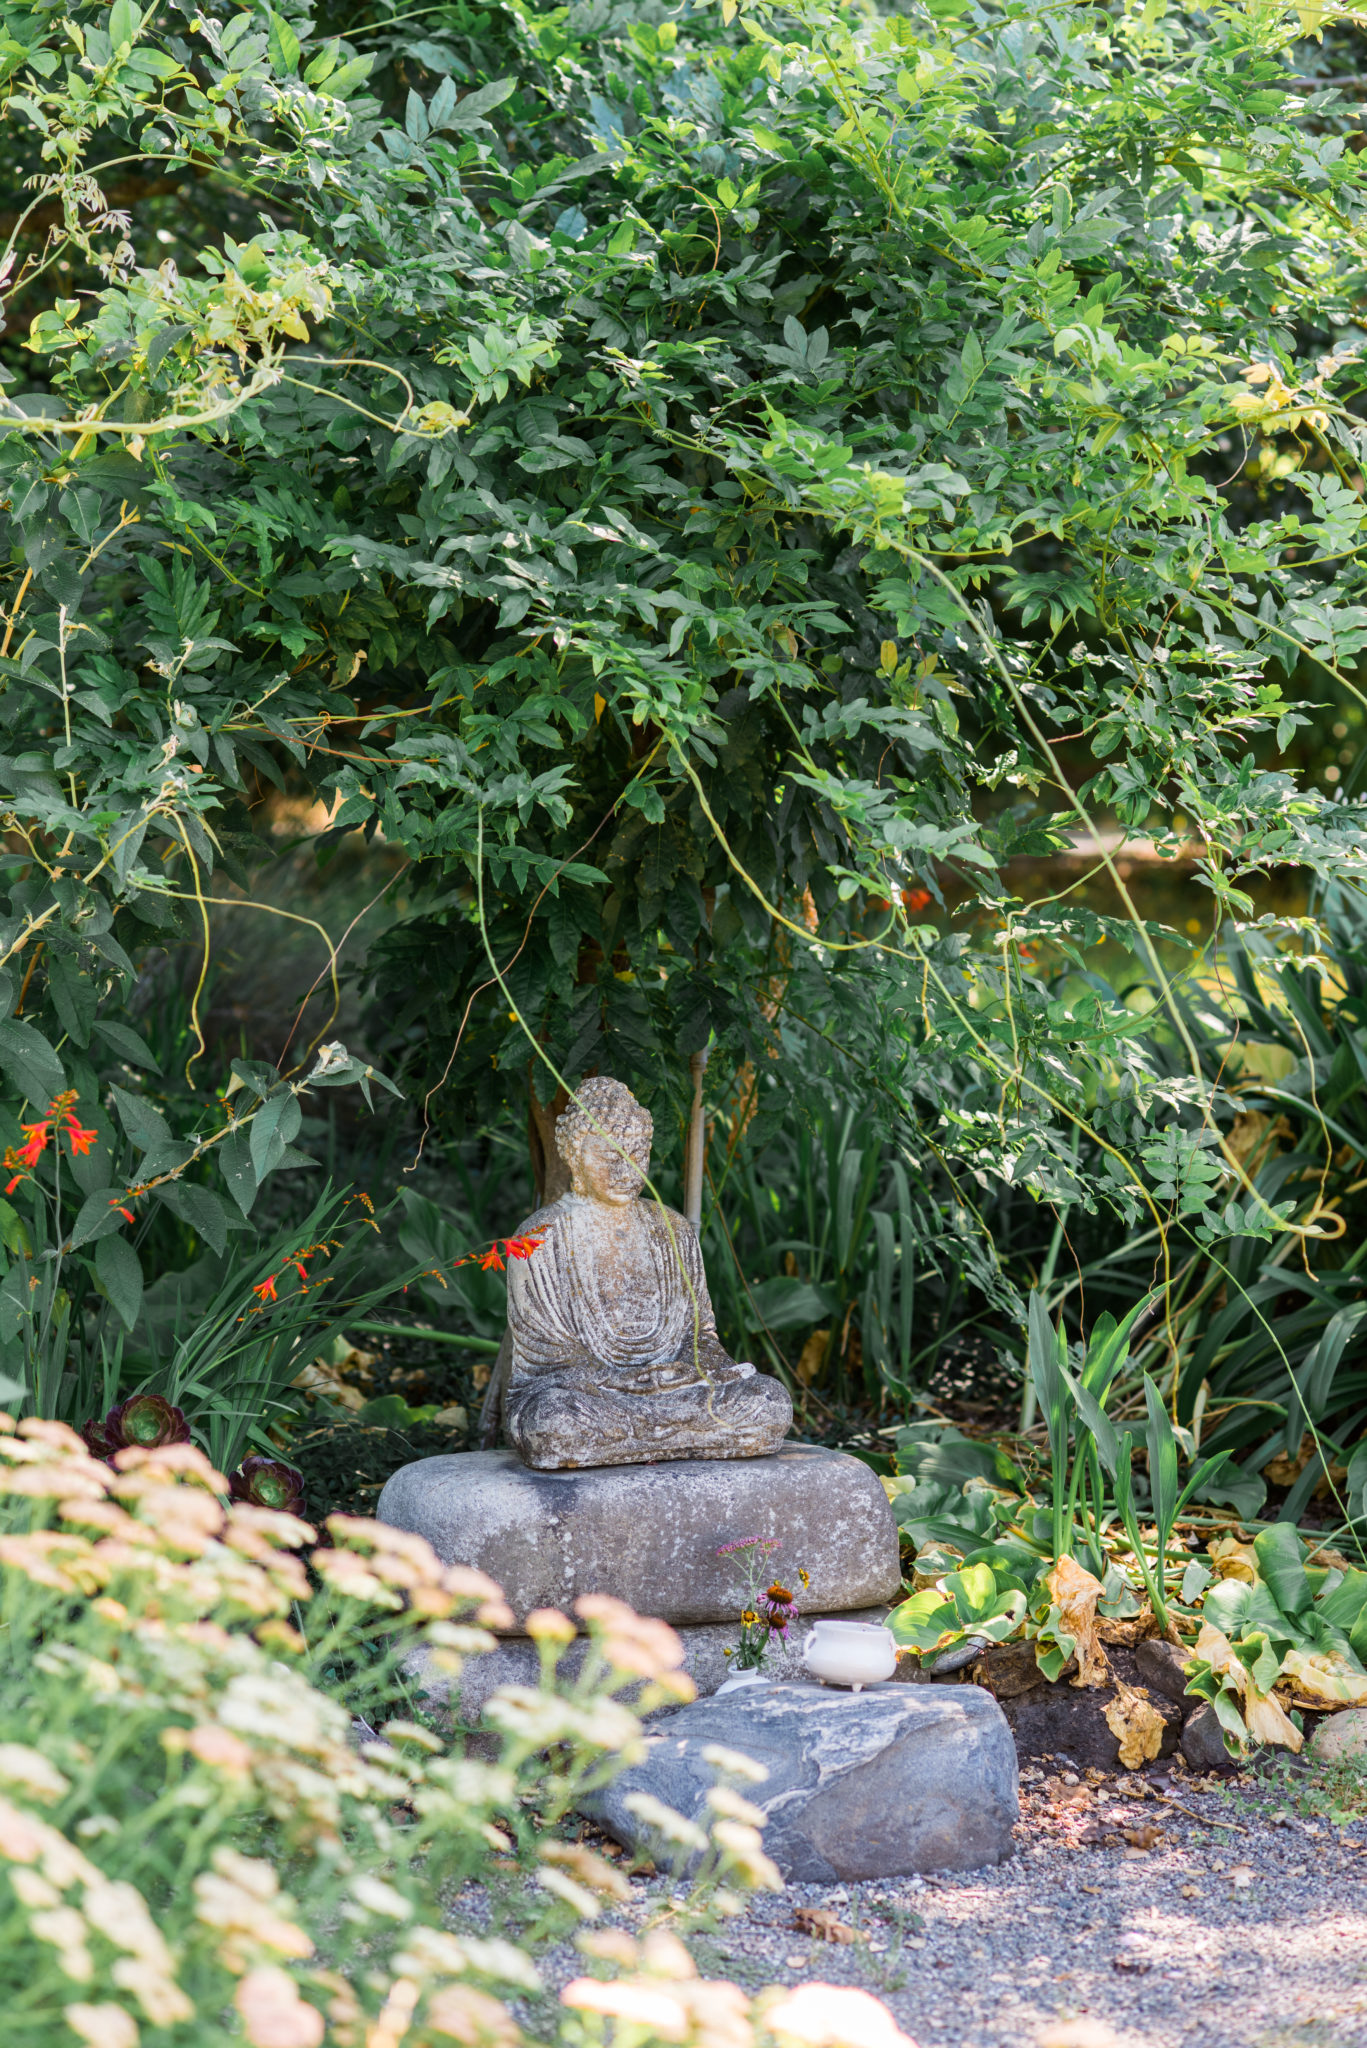 Buddha in the garden.